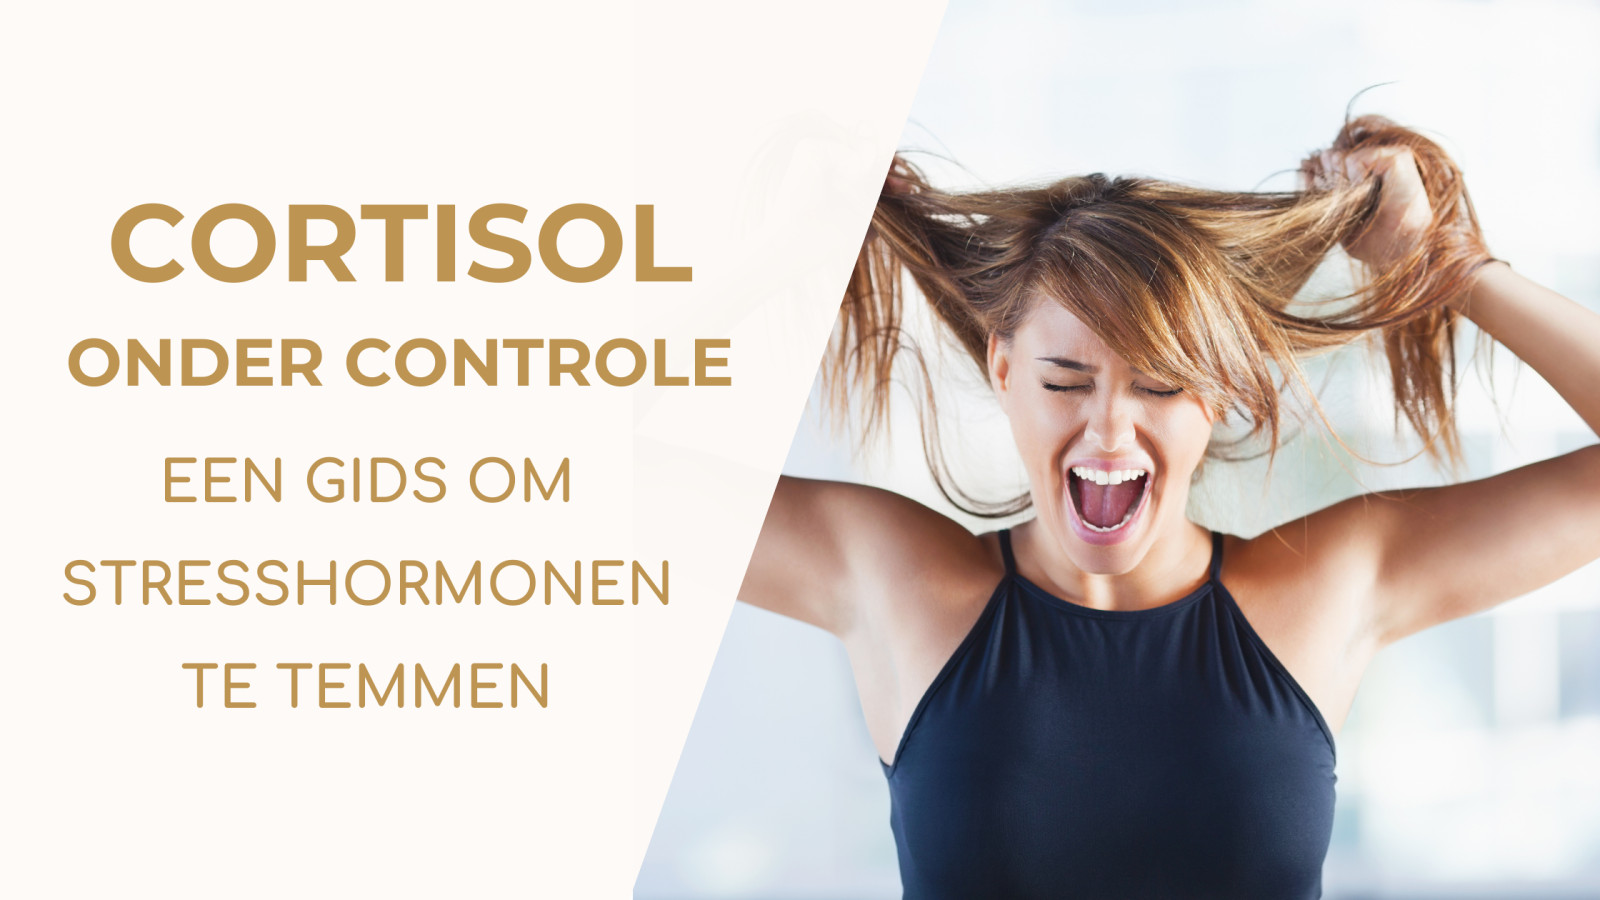 Cortisol onder controle: een gids om stresshormonen te temmen